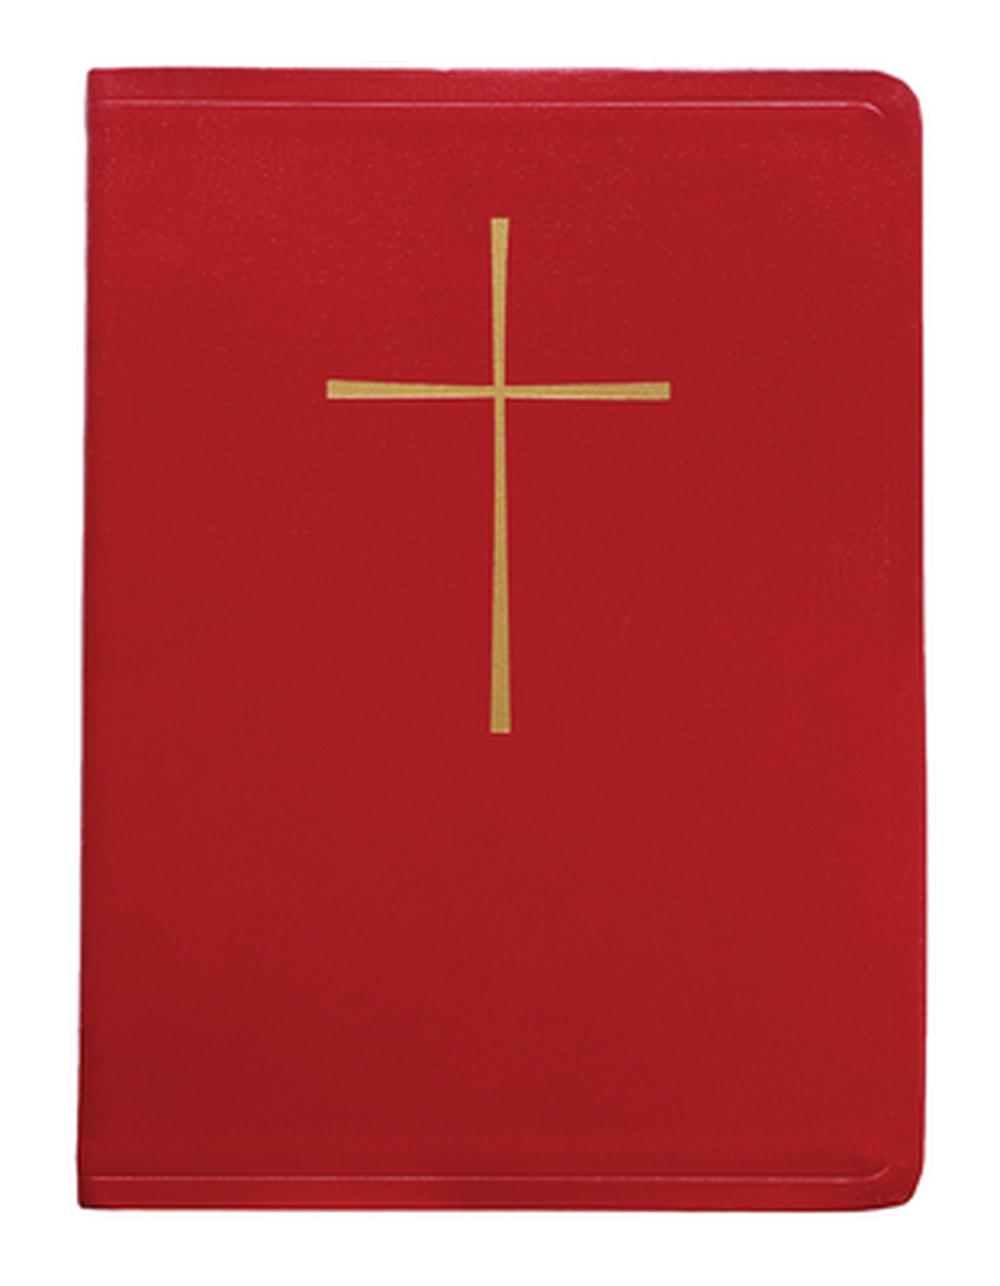 red prayer book free pdf download